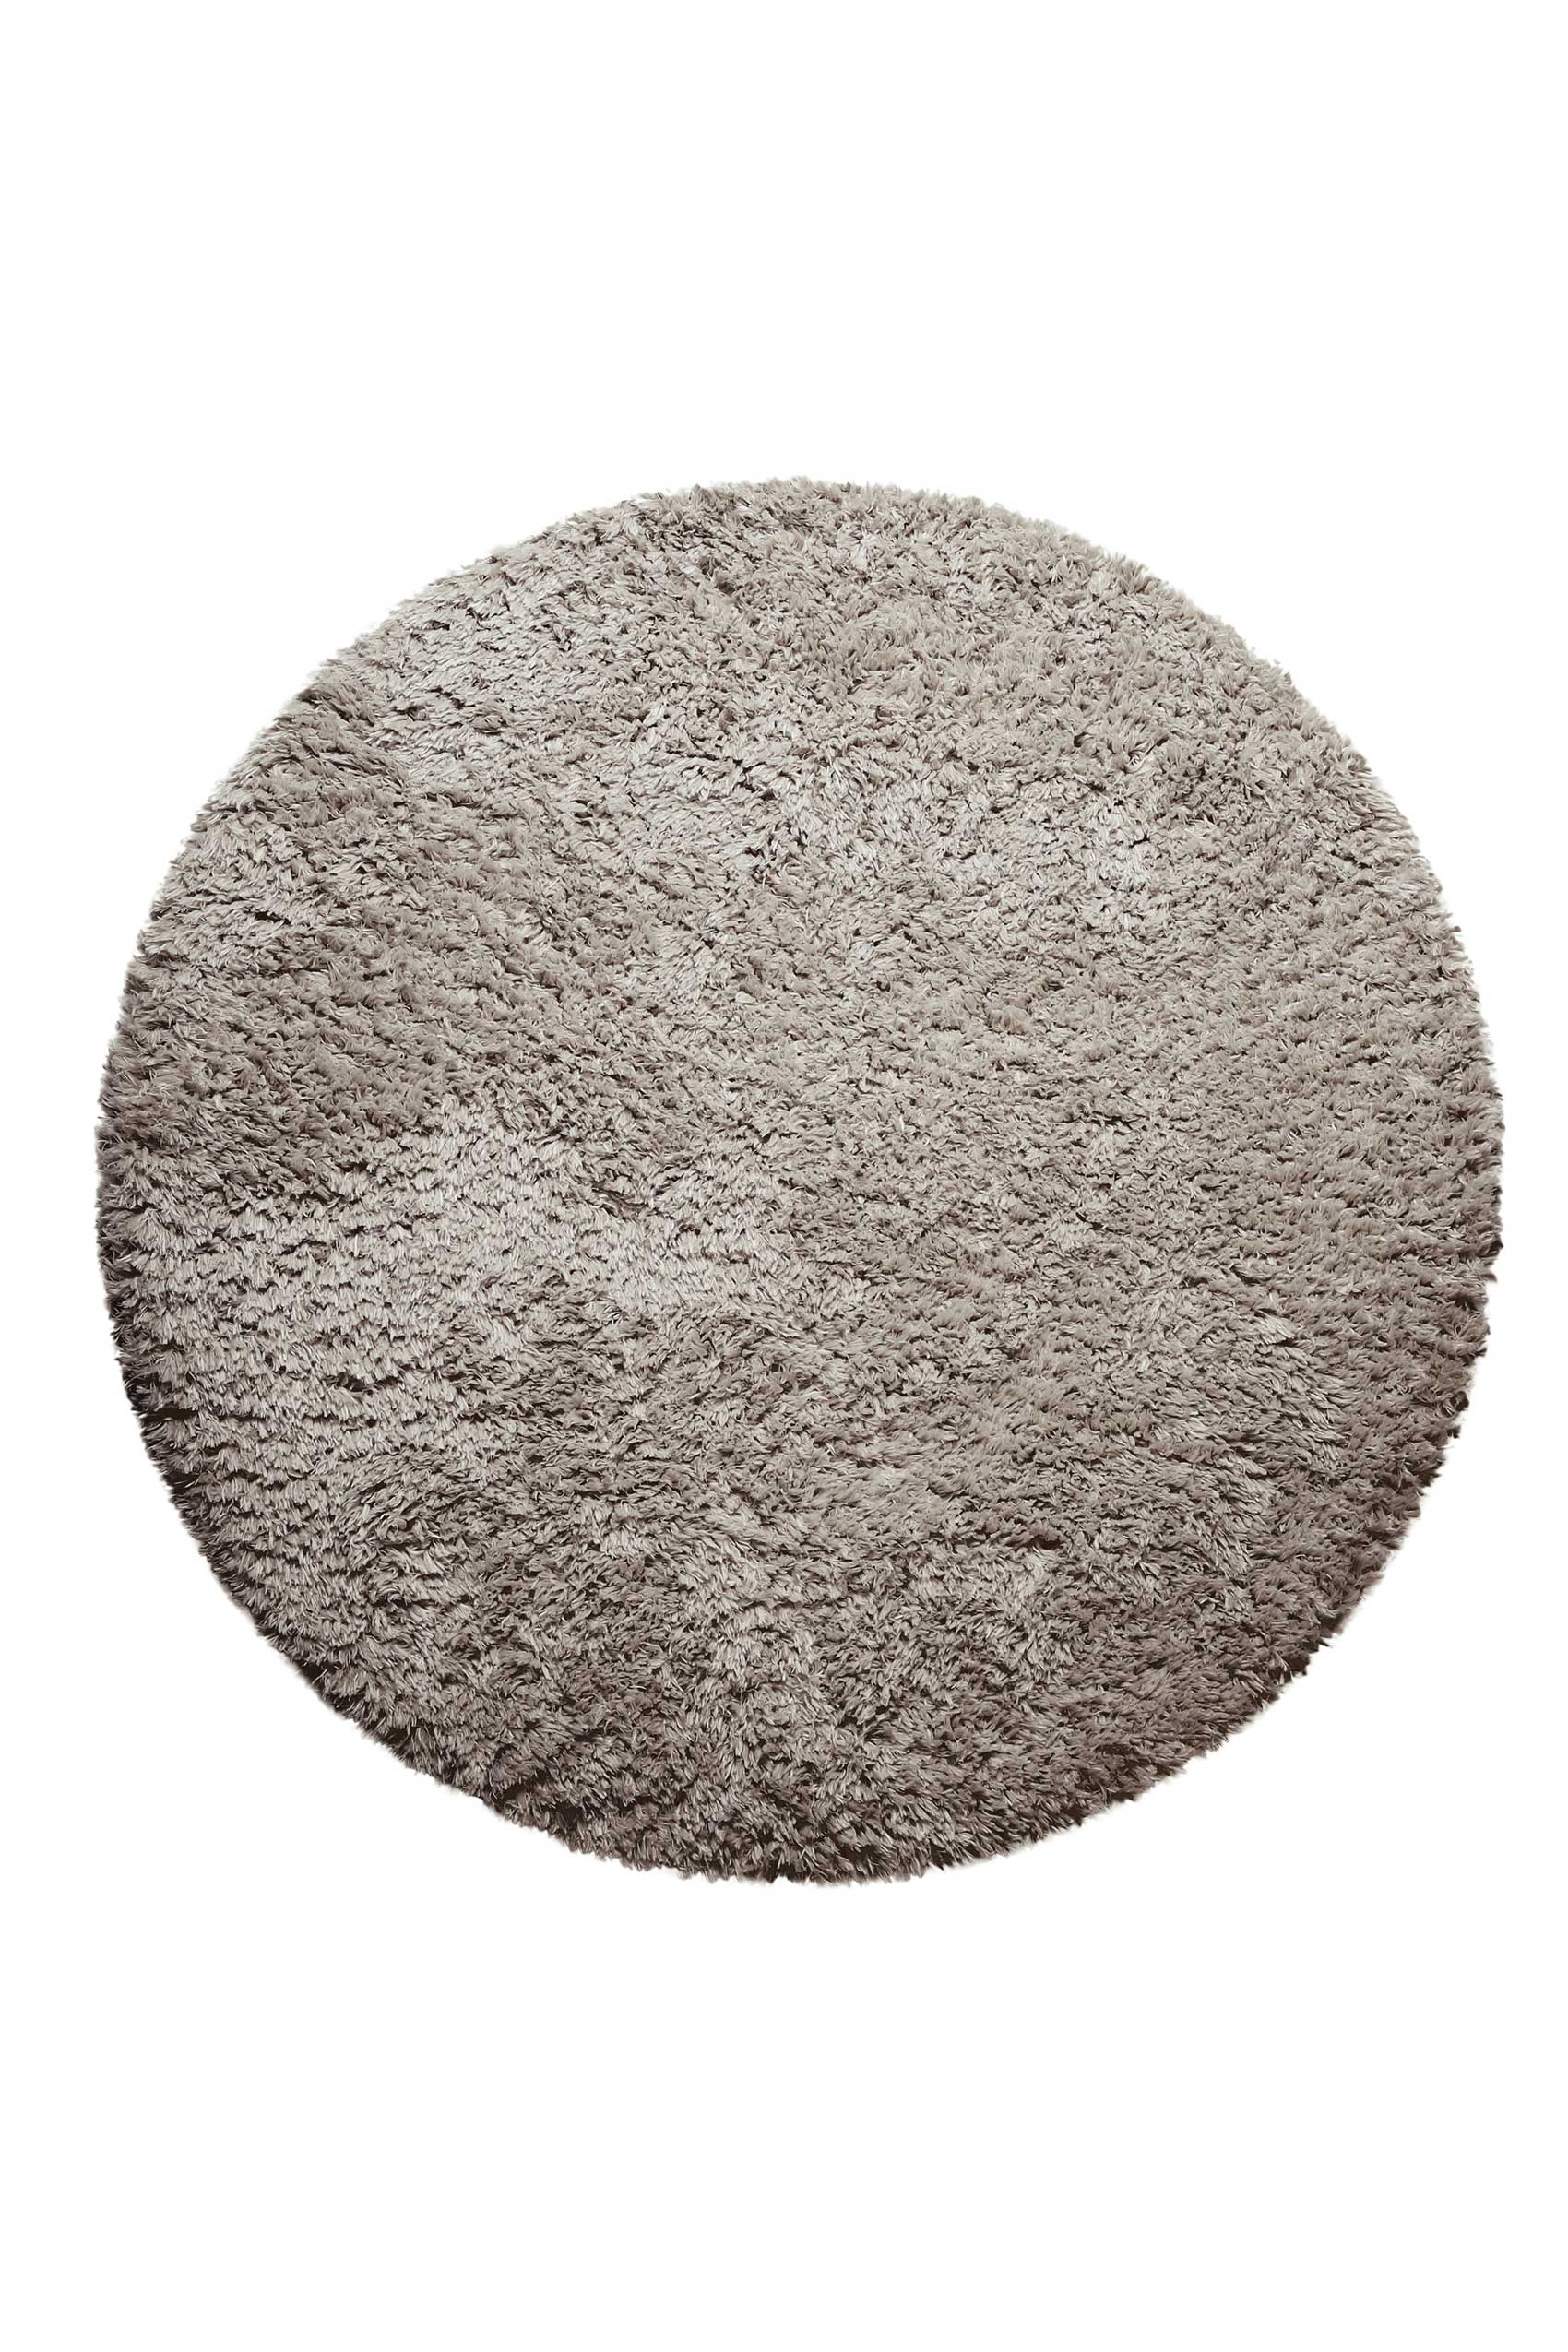 Nachhaltiger Teppich Rund Sand Braun soft & weich » Matteo « Homie Living - Ansicht 1